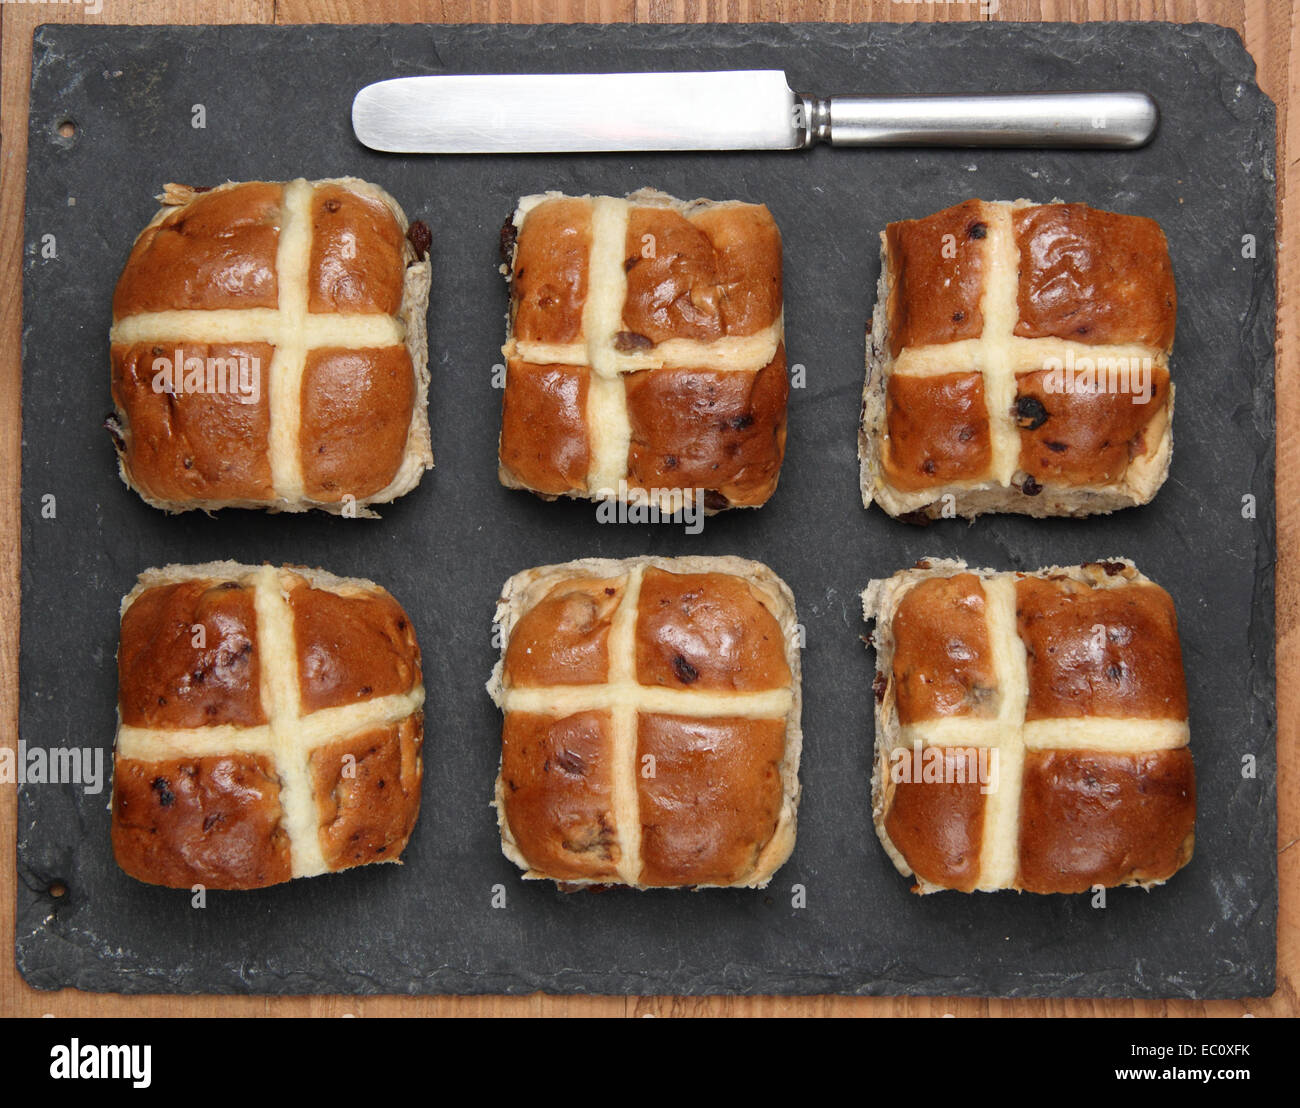 Hot cross buns, England, UK Stock Photo